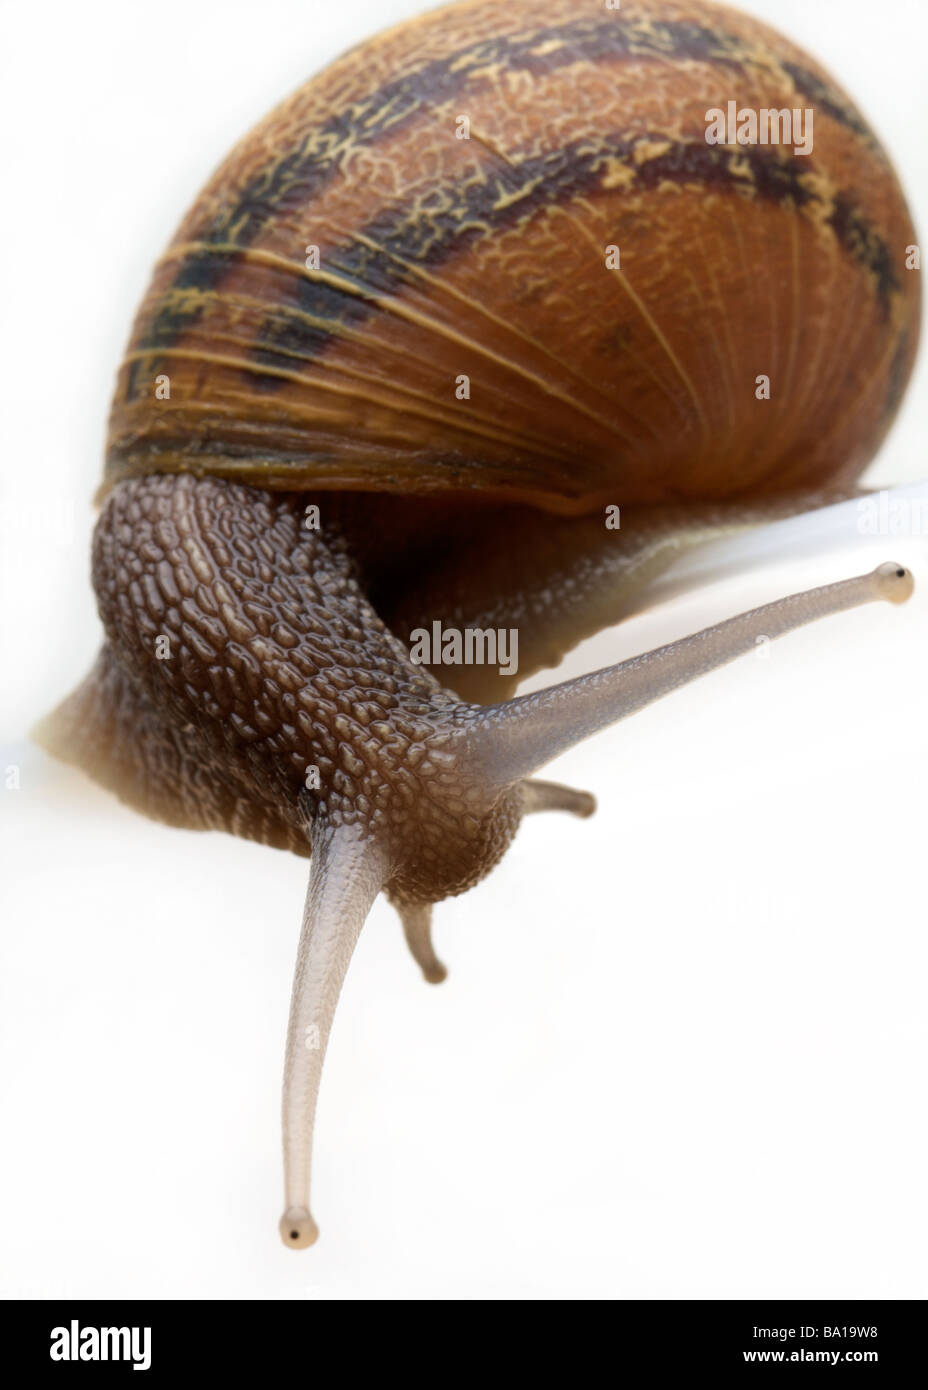 Garden Snail on a white background Stock Photo